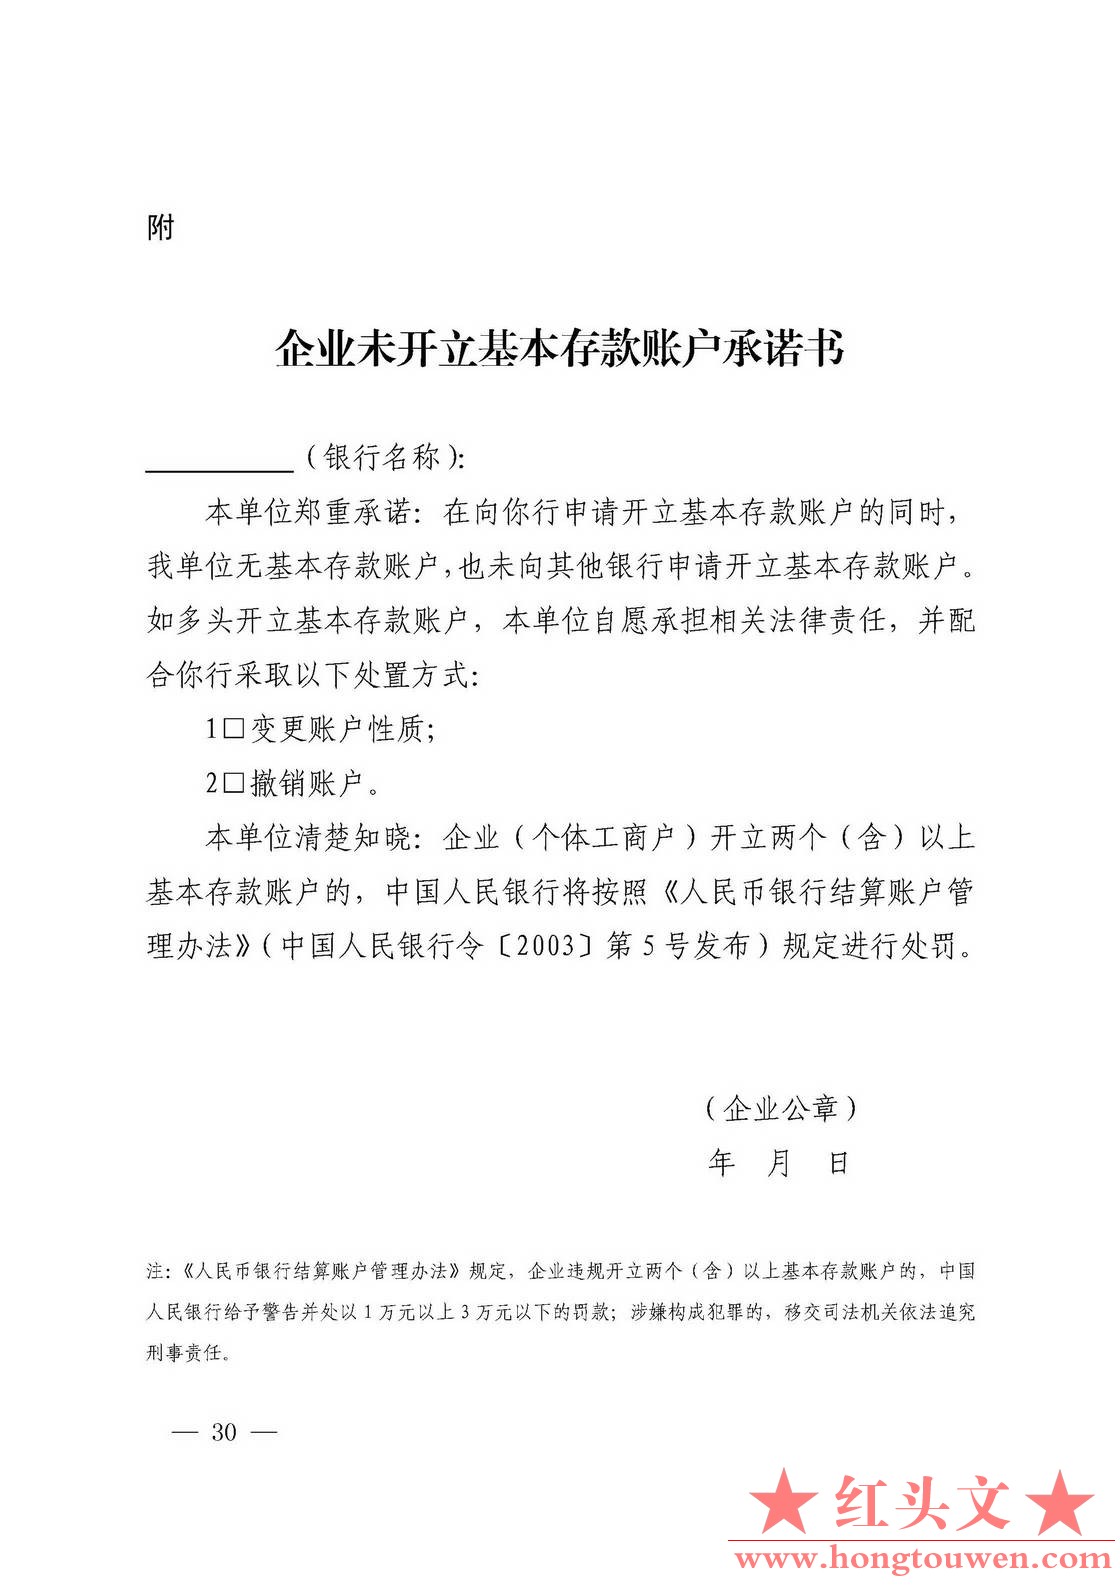 银发[2019]41号-中国人民银行关于取消企业银行账户许可的通知_页面_30.jpg.jpg